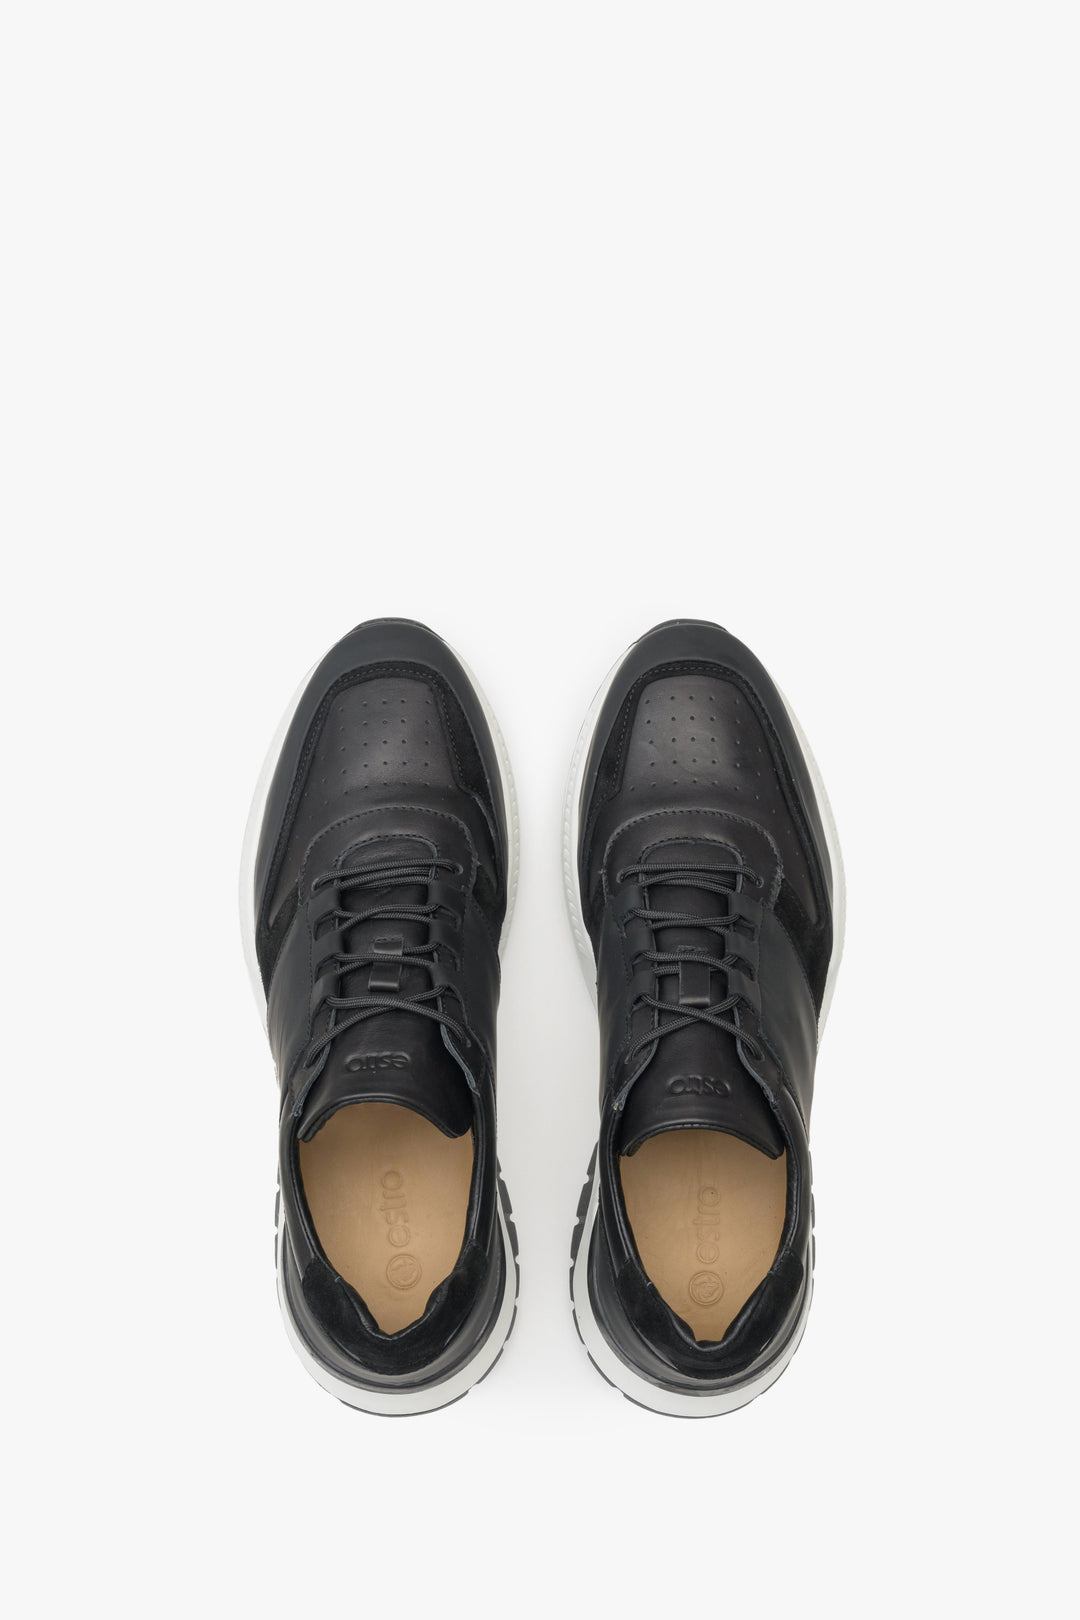 Czarno-białe sneakersy damskie Estro - pogląd wierzchniej części buta.